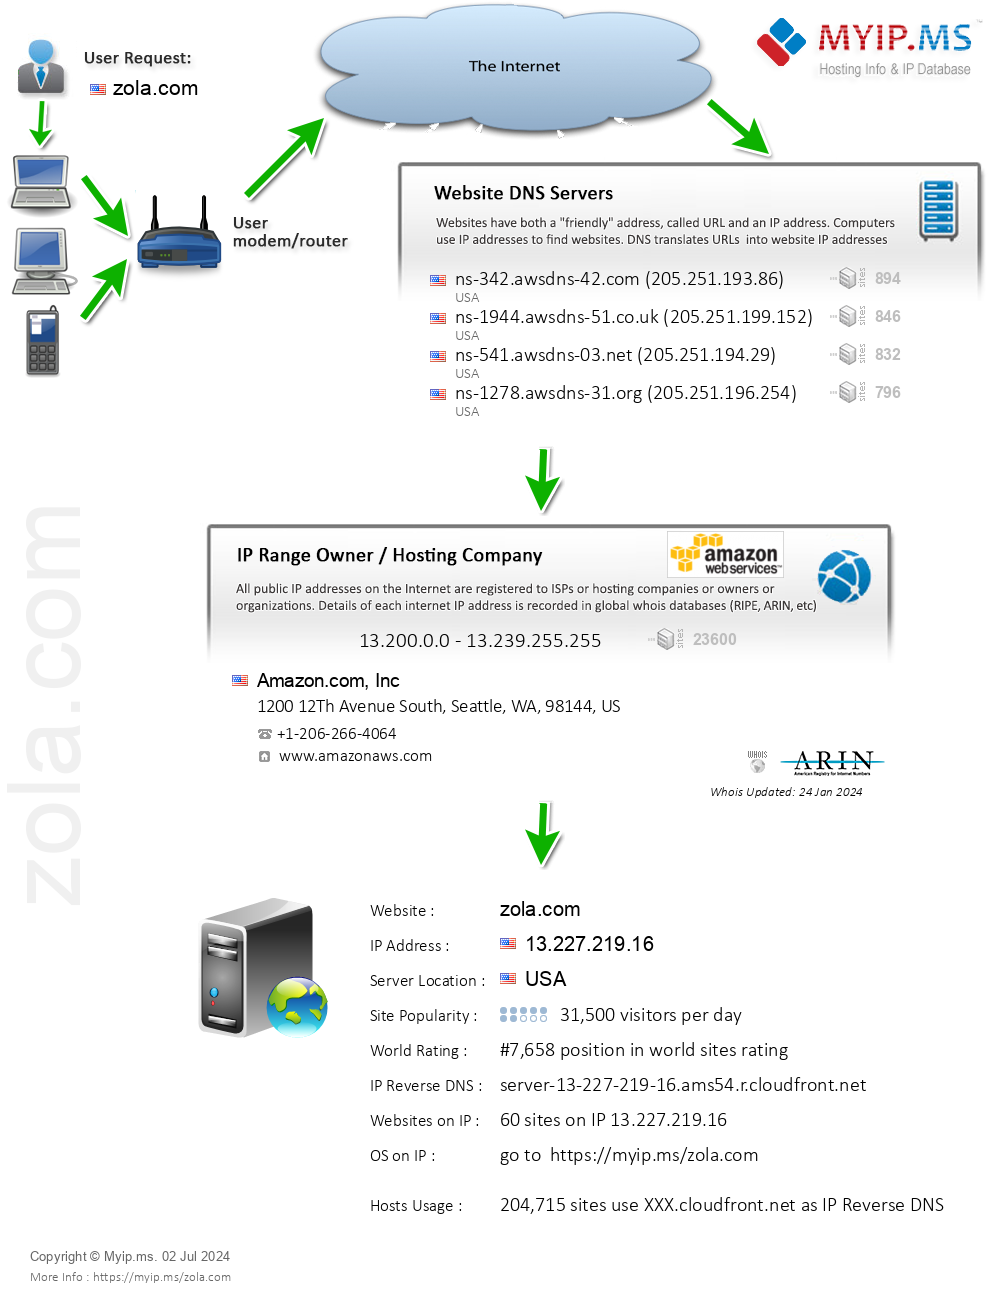 Zola.com - Website Hosting Visual IP Diagram